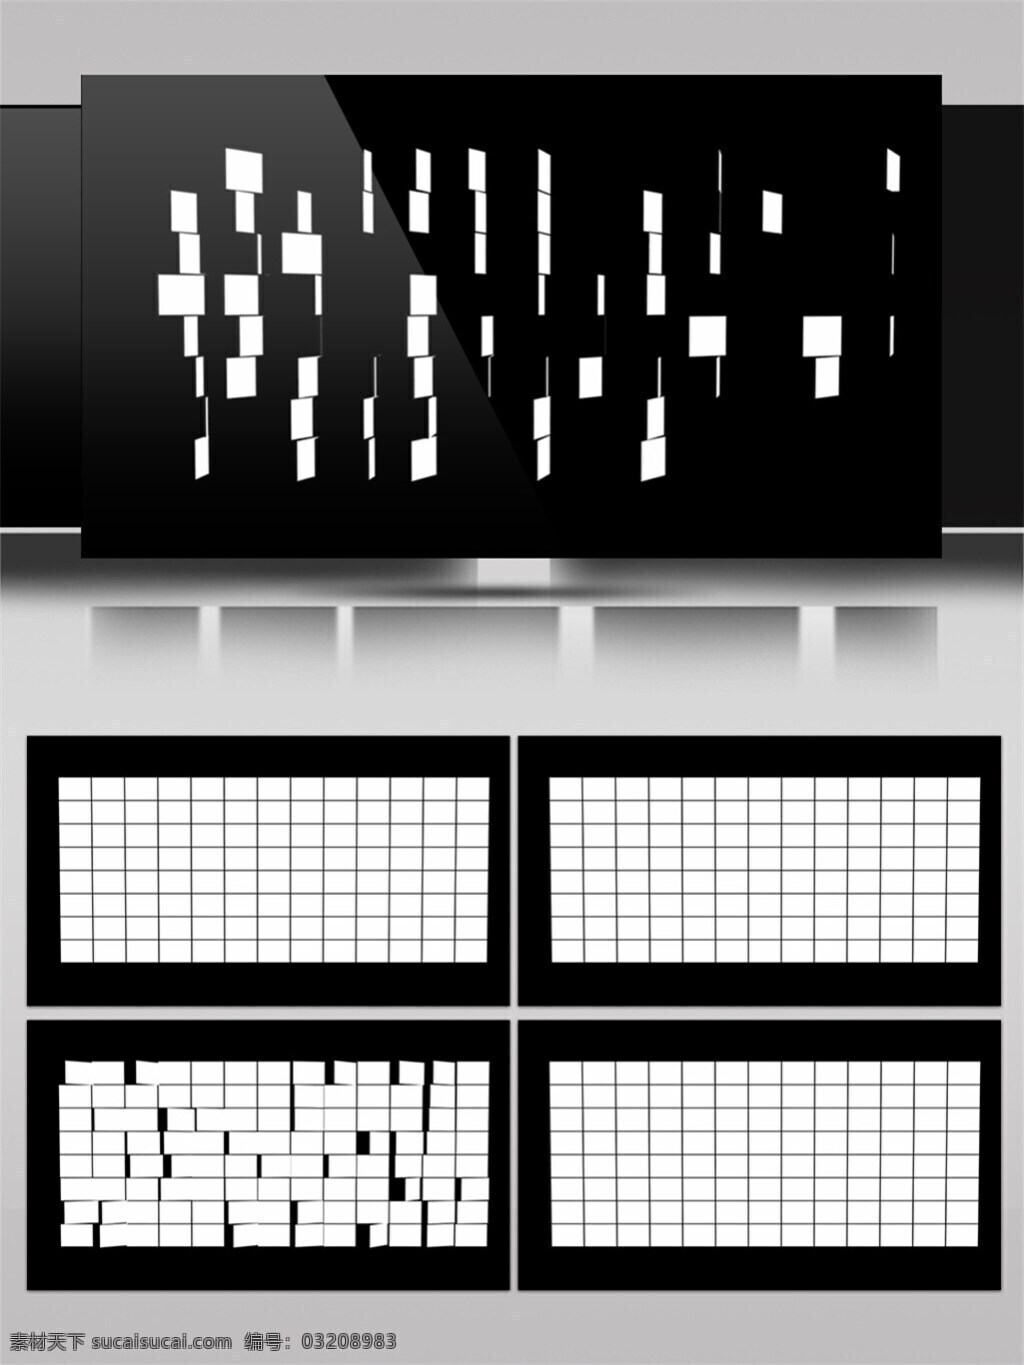 白色 方块 矩阵 高清 视频 电脑屏幕保护 光束 激光 视觉享受 手机壁纸